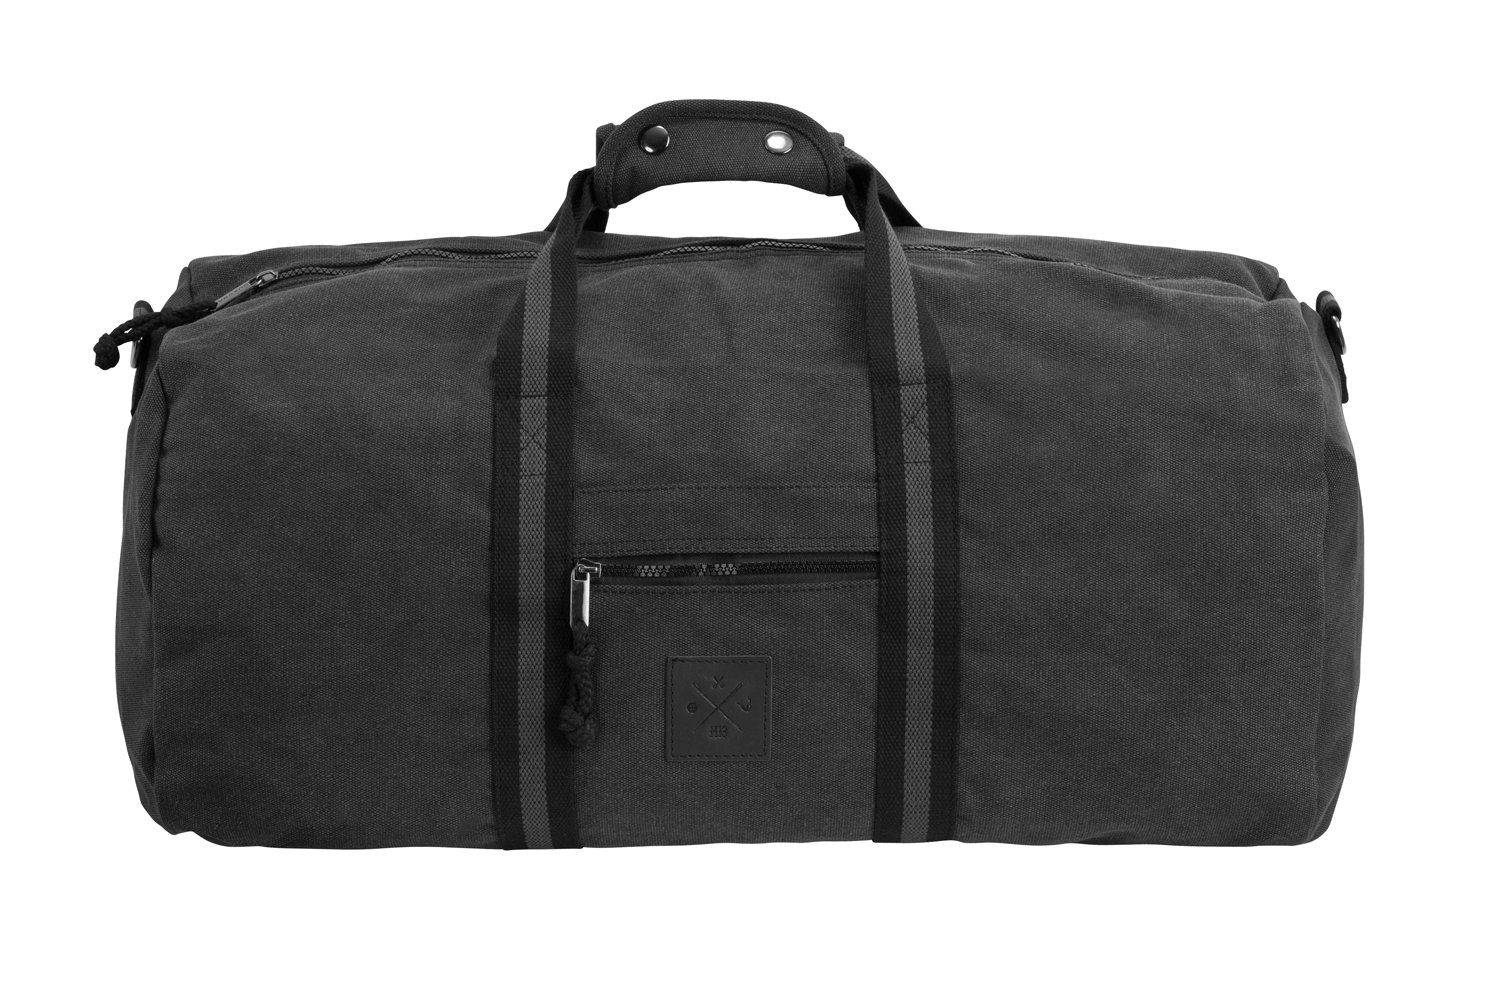 Manufaktur13 Sporttasche Canvas Duffel Bag - Sporttasche, Barrel Bag, Reisetasche, 45L Fassungsvermögen Grey Matter | Sporttaschen